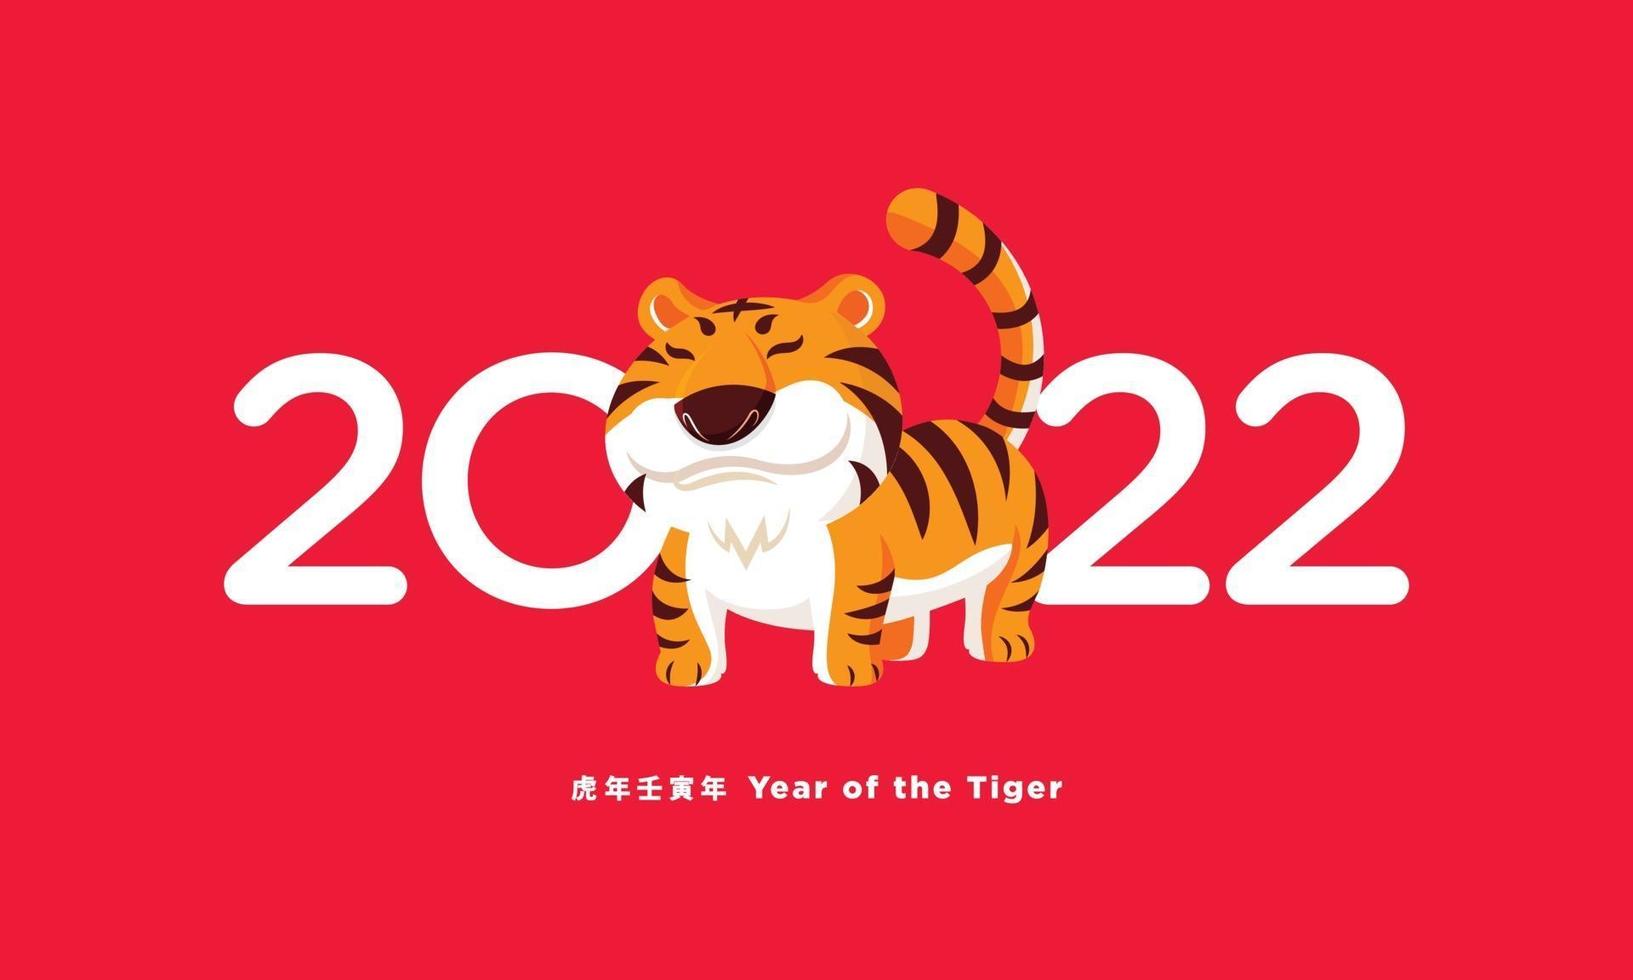 ano novo chinês de 2022. desenho animado bonito tigre com sinal de 2022 vetor